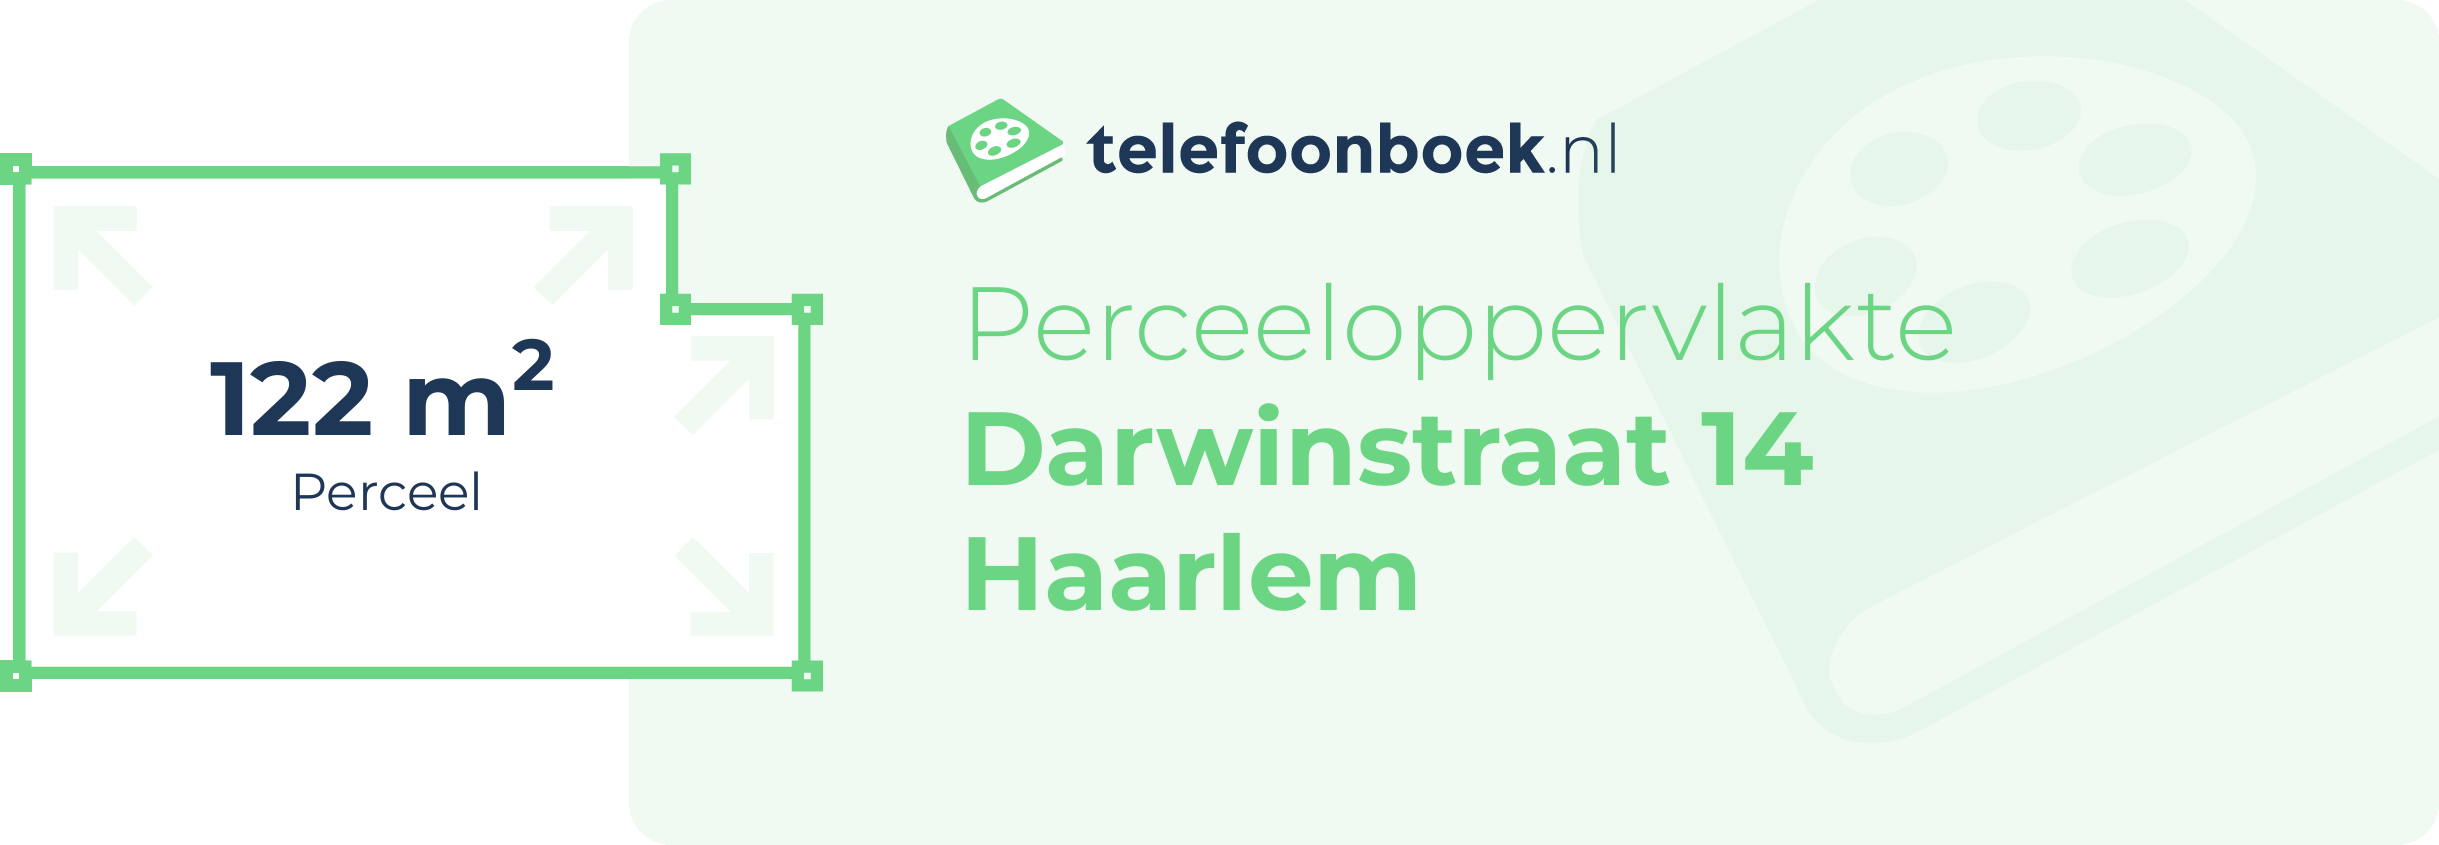 Perceeloppervlakte Darwinstraat 14 Haarlem